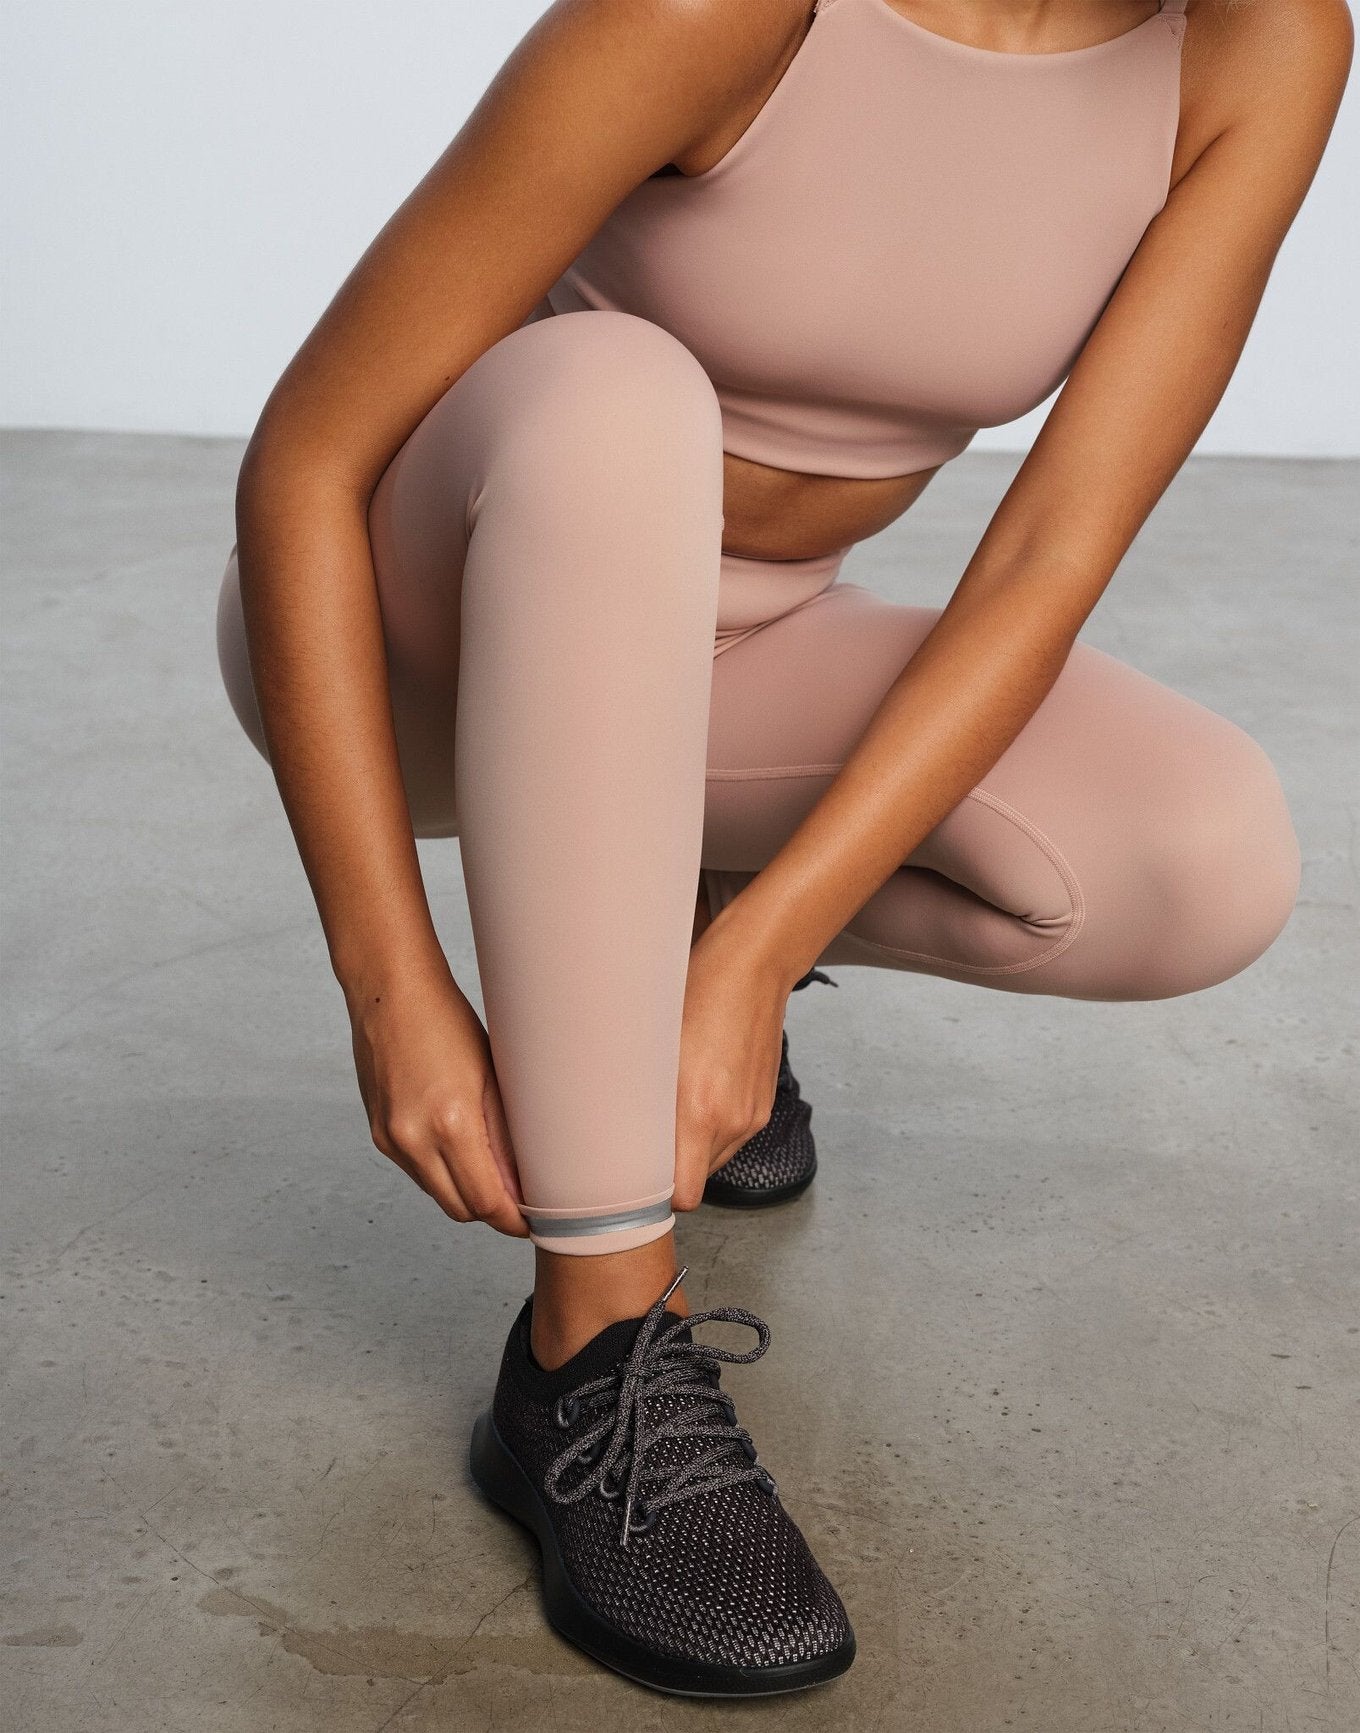 Gentrue Do Legging X EBN - 001 Legging in color Bare and shape legging